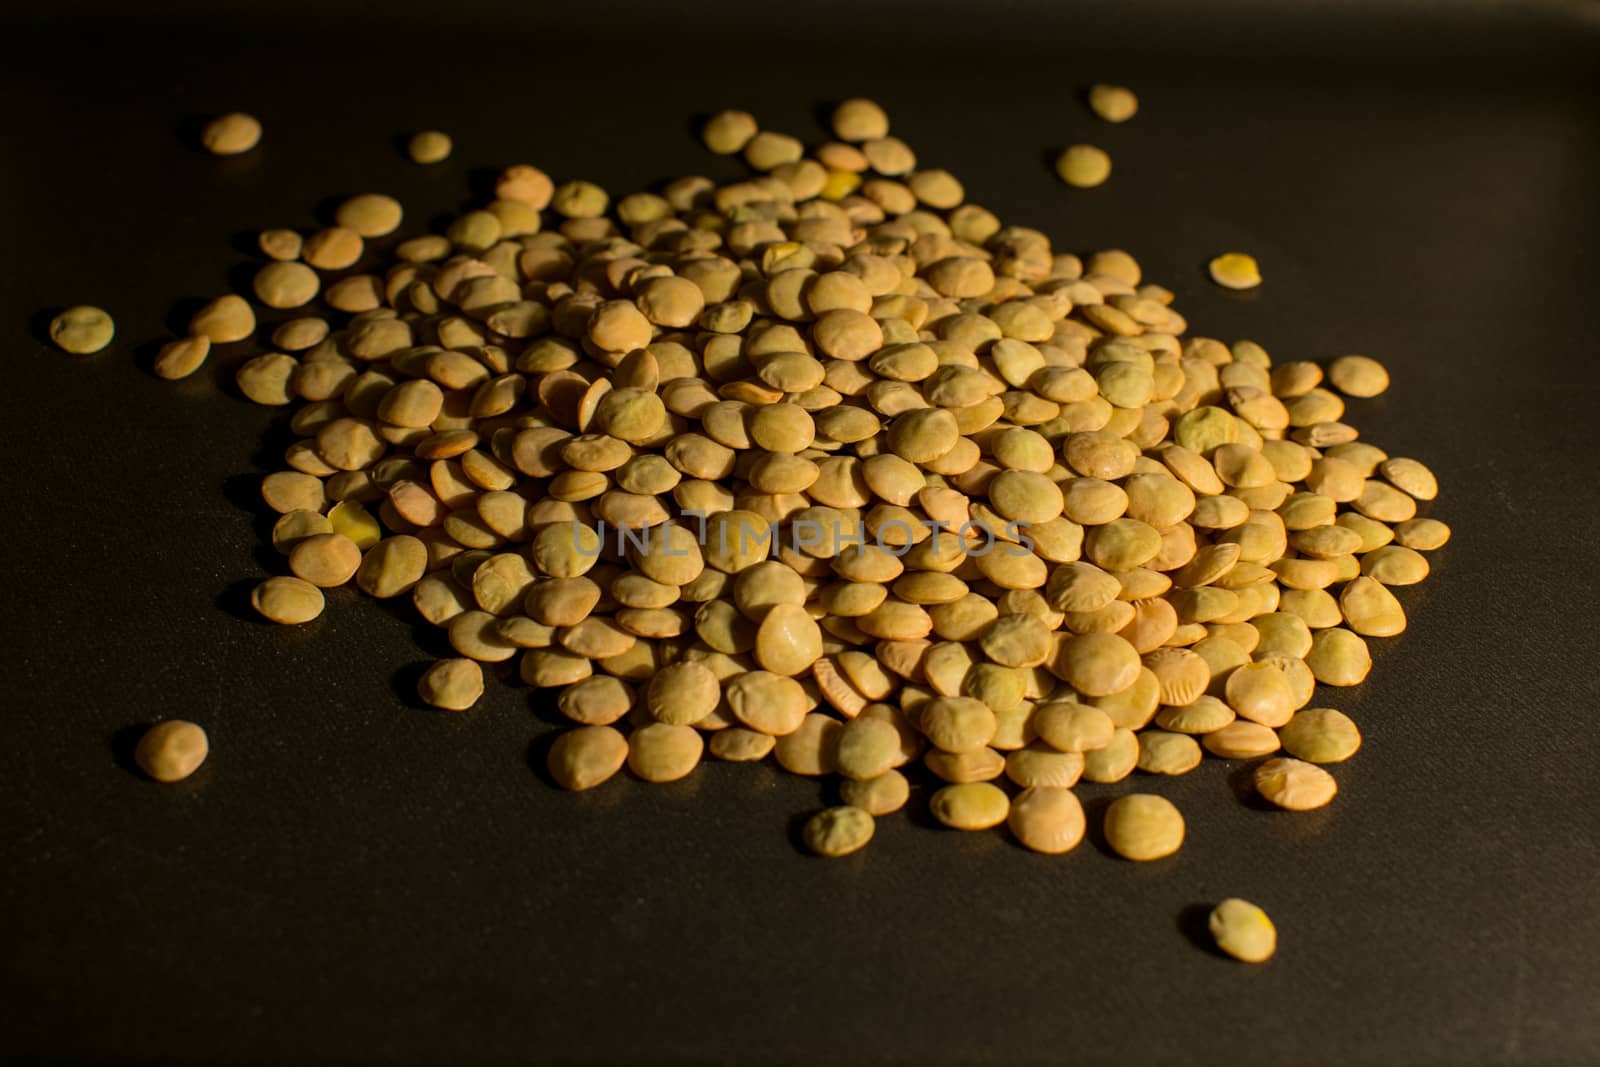 Dried lentils in a darken background